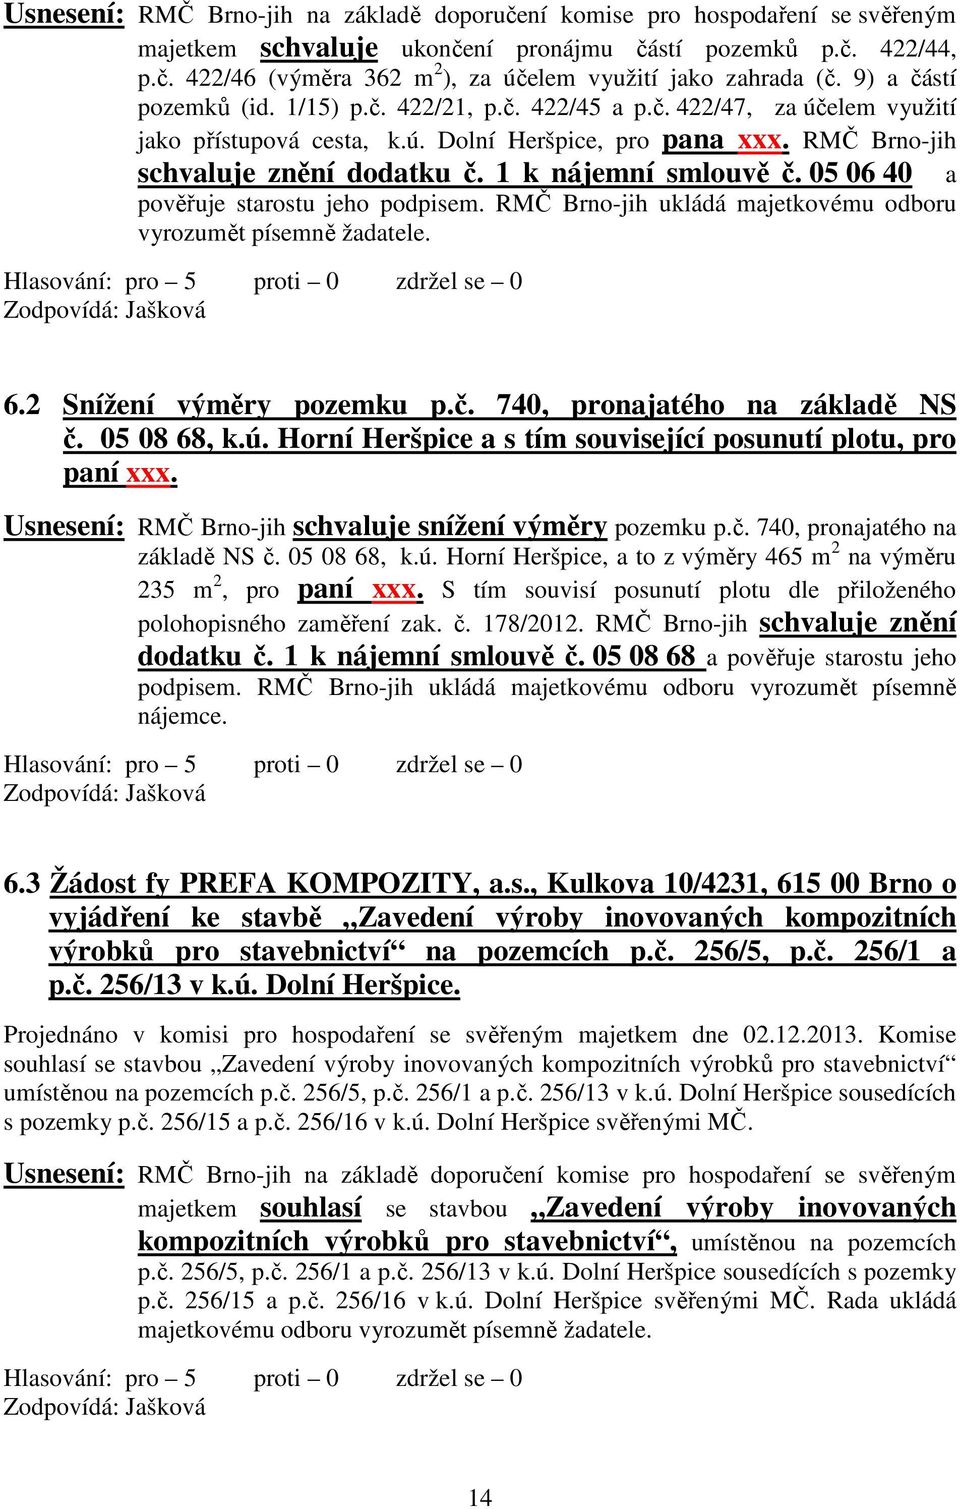 1 k nájemní smlouvě č. 05 06 40 a pověřuje starostu jeho podpisem. RMČ Brno-jih ukládá majetkovému odboru vyrozumět písemně žadatele. Zodpovídá: Jašková 6.2 Snížení výměry pozemku p.č. 740, pronajatého na základě NS č.